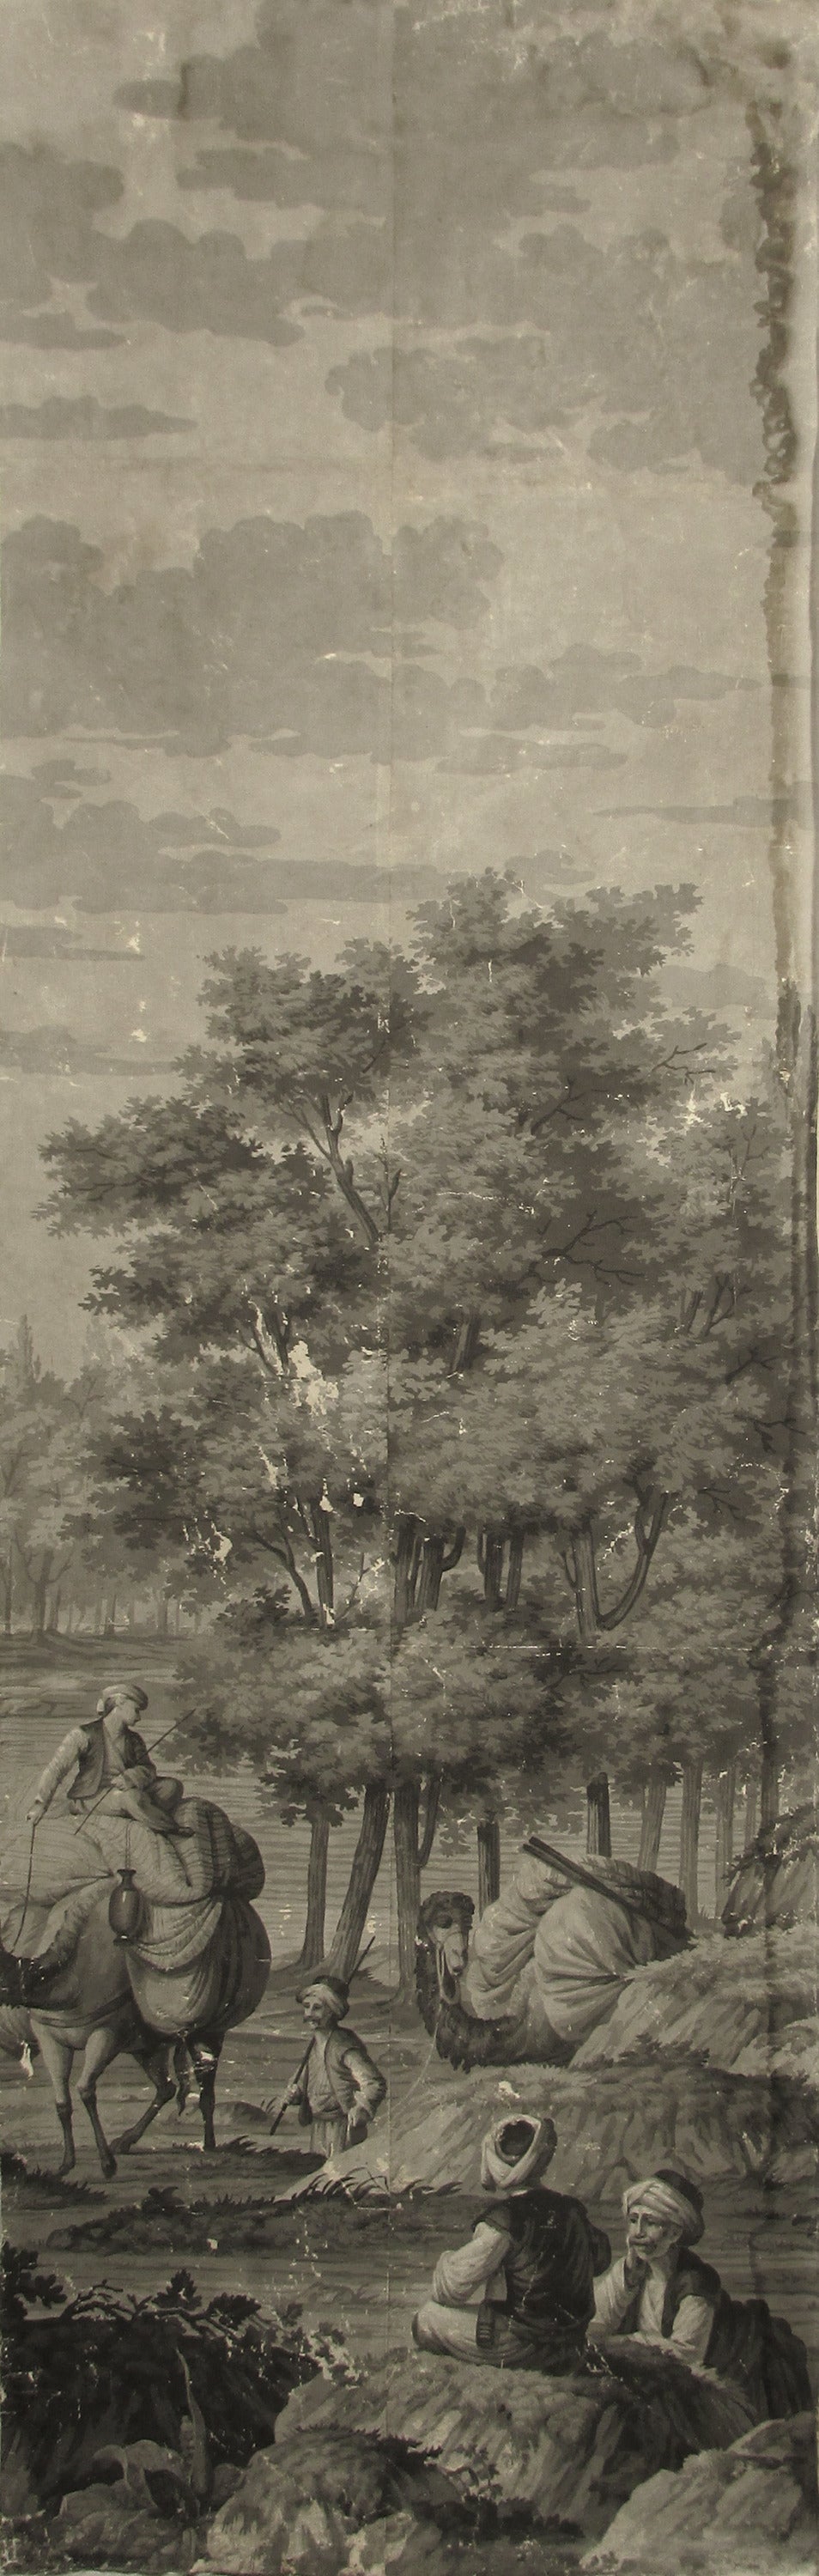 Engraved 21 Wallpaper Panels, by Joseph Dufour Et Cie, After Comte de Choiseul-Gouffier